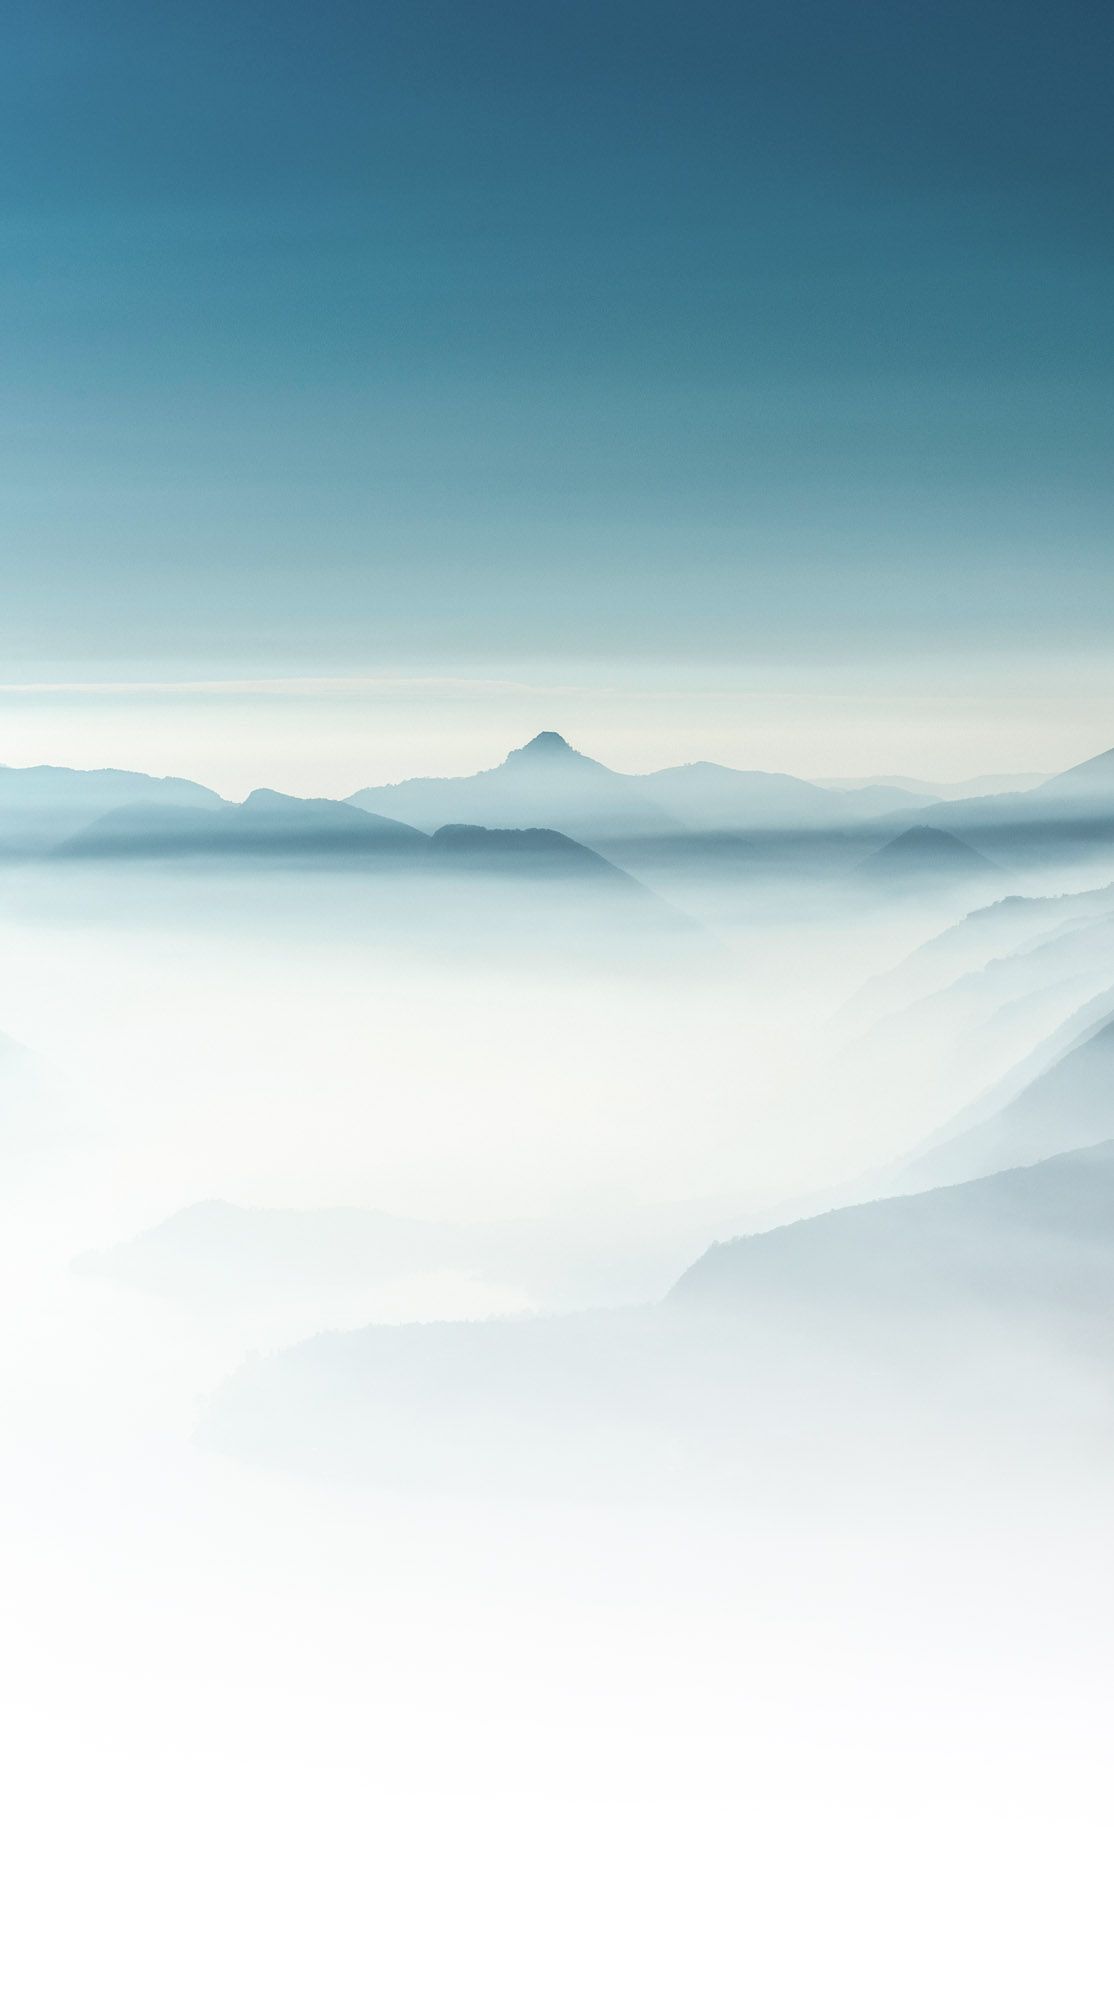  Berg Hintergrundbild 1114x2000. Kolumne: Denkt Alpinismus die Natur als Ganzes?